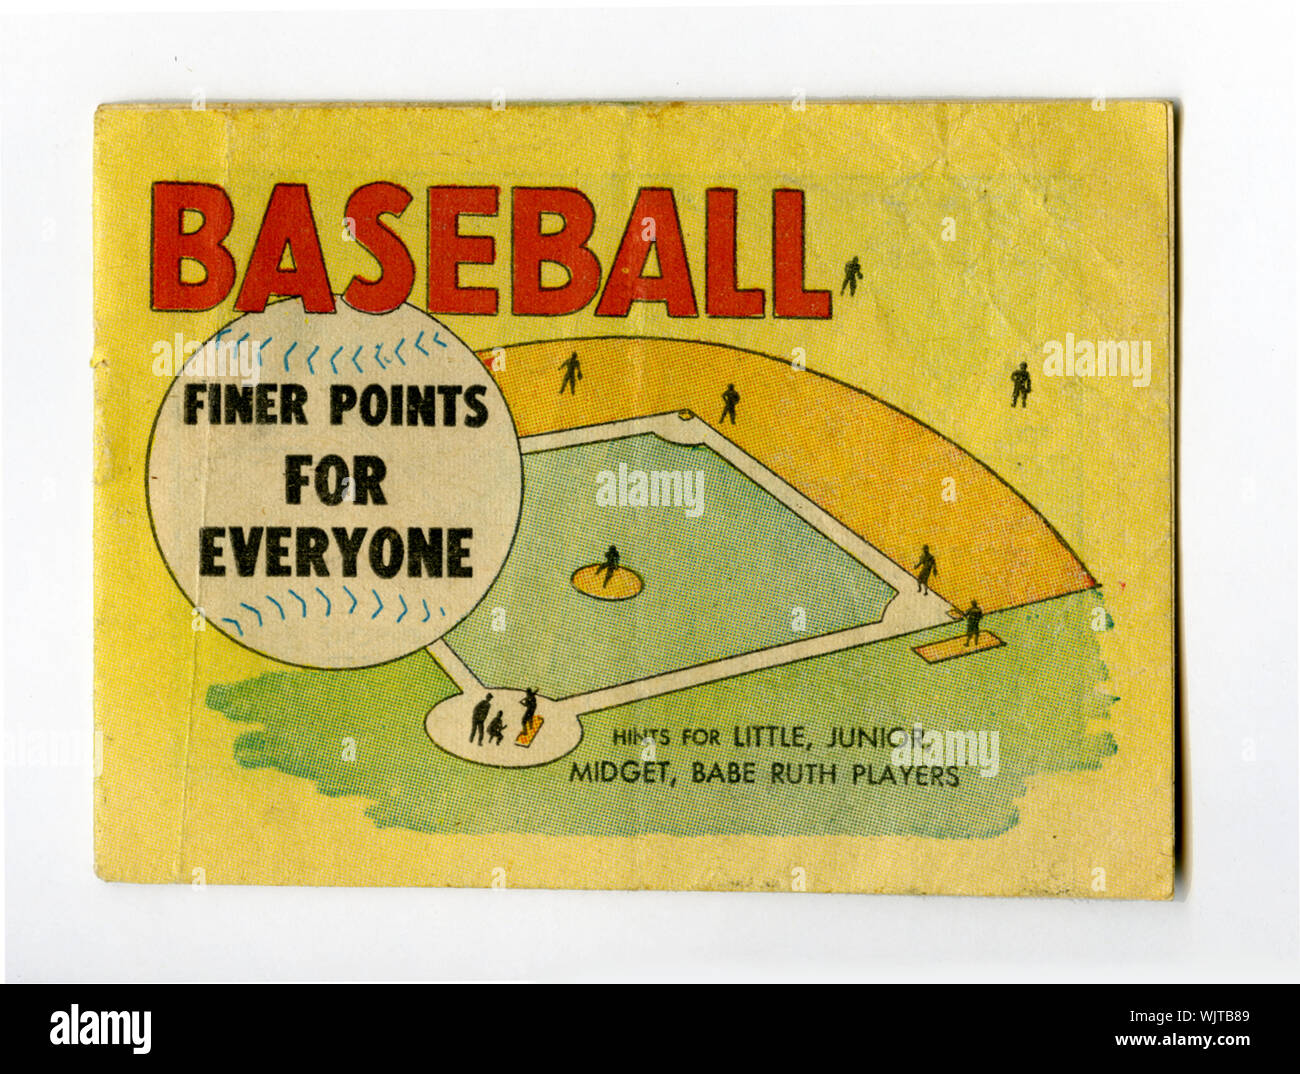 Ère 1960 Livret de souvenir offrant des conseils pour jouer au baseball pour les enfants intitulé points plus précis pour tout le monde et compte tenu de l'écart dans les banques. Banque D'Images